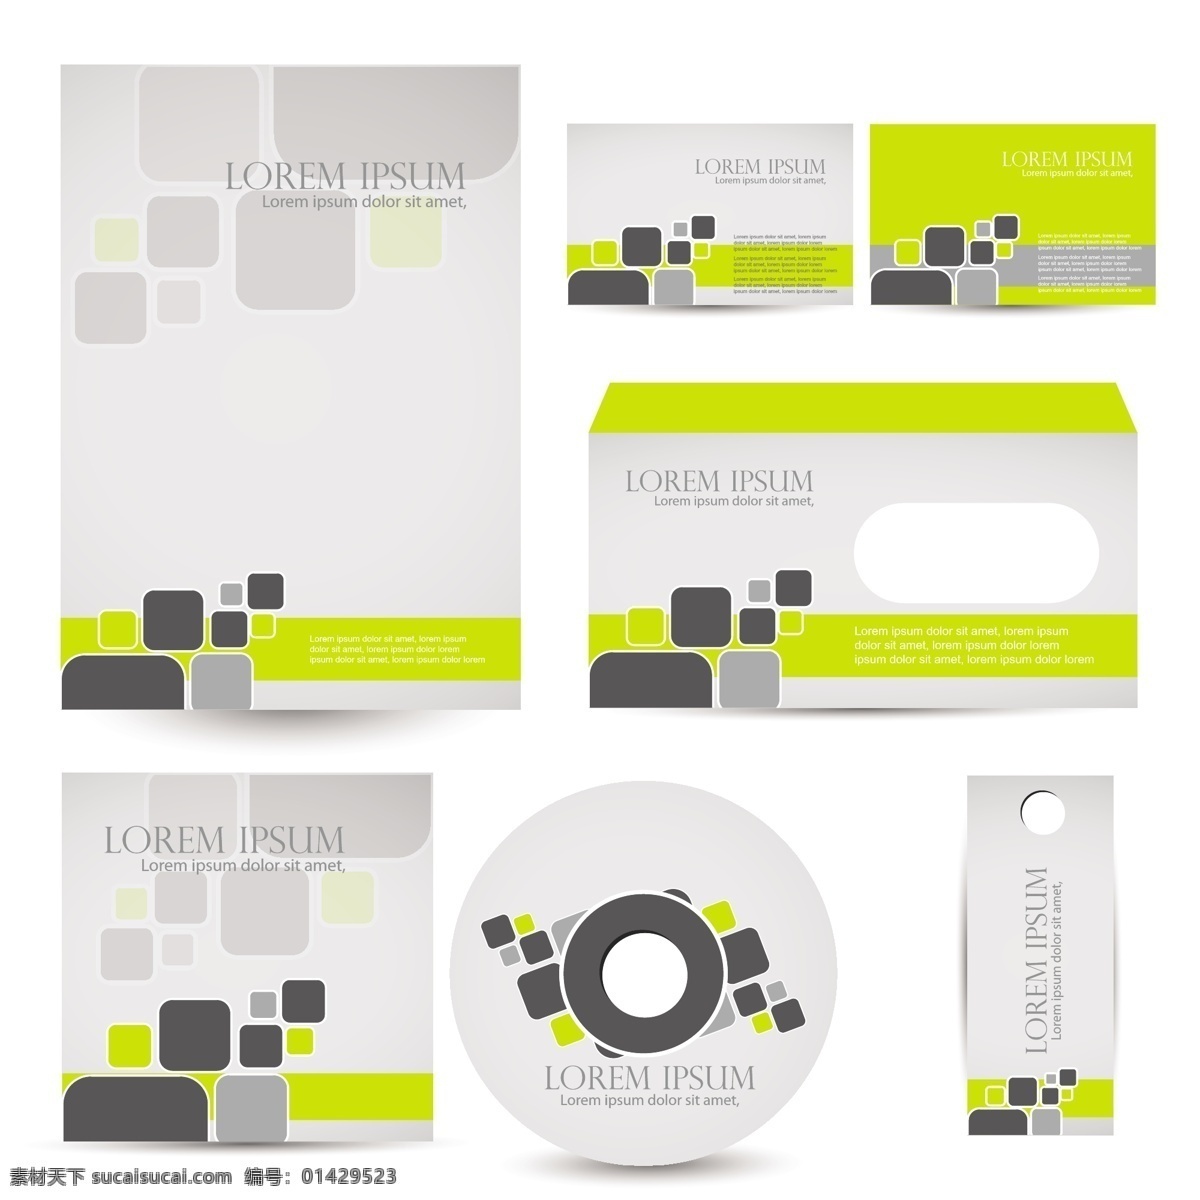 名片 信封 cd 包装设计 名片模板 cd盒 光盘包装 信笺纸 vi模板 vis 识别 系统 vi设计 矢量素材 名片卡片 白色